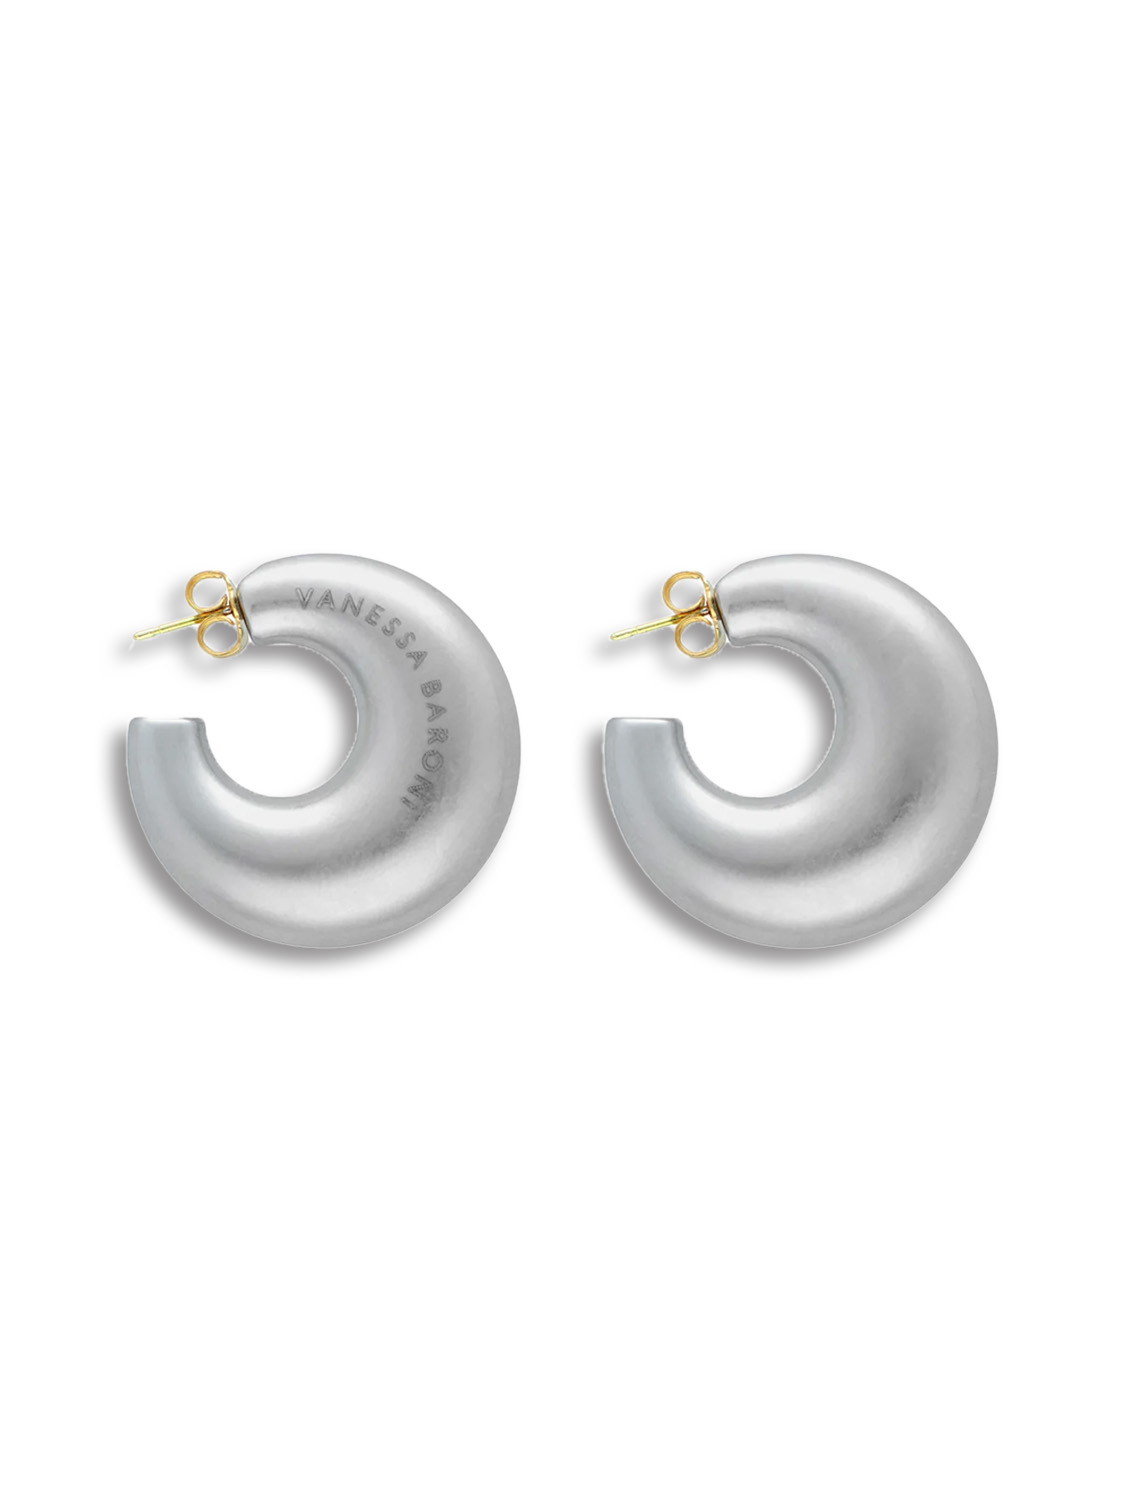 Moon Earring - ear studs in creole shape